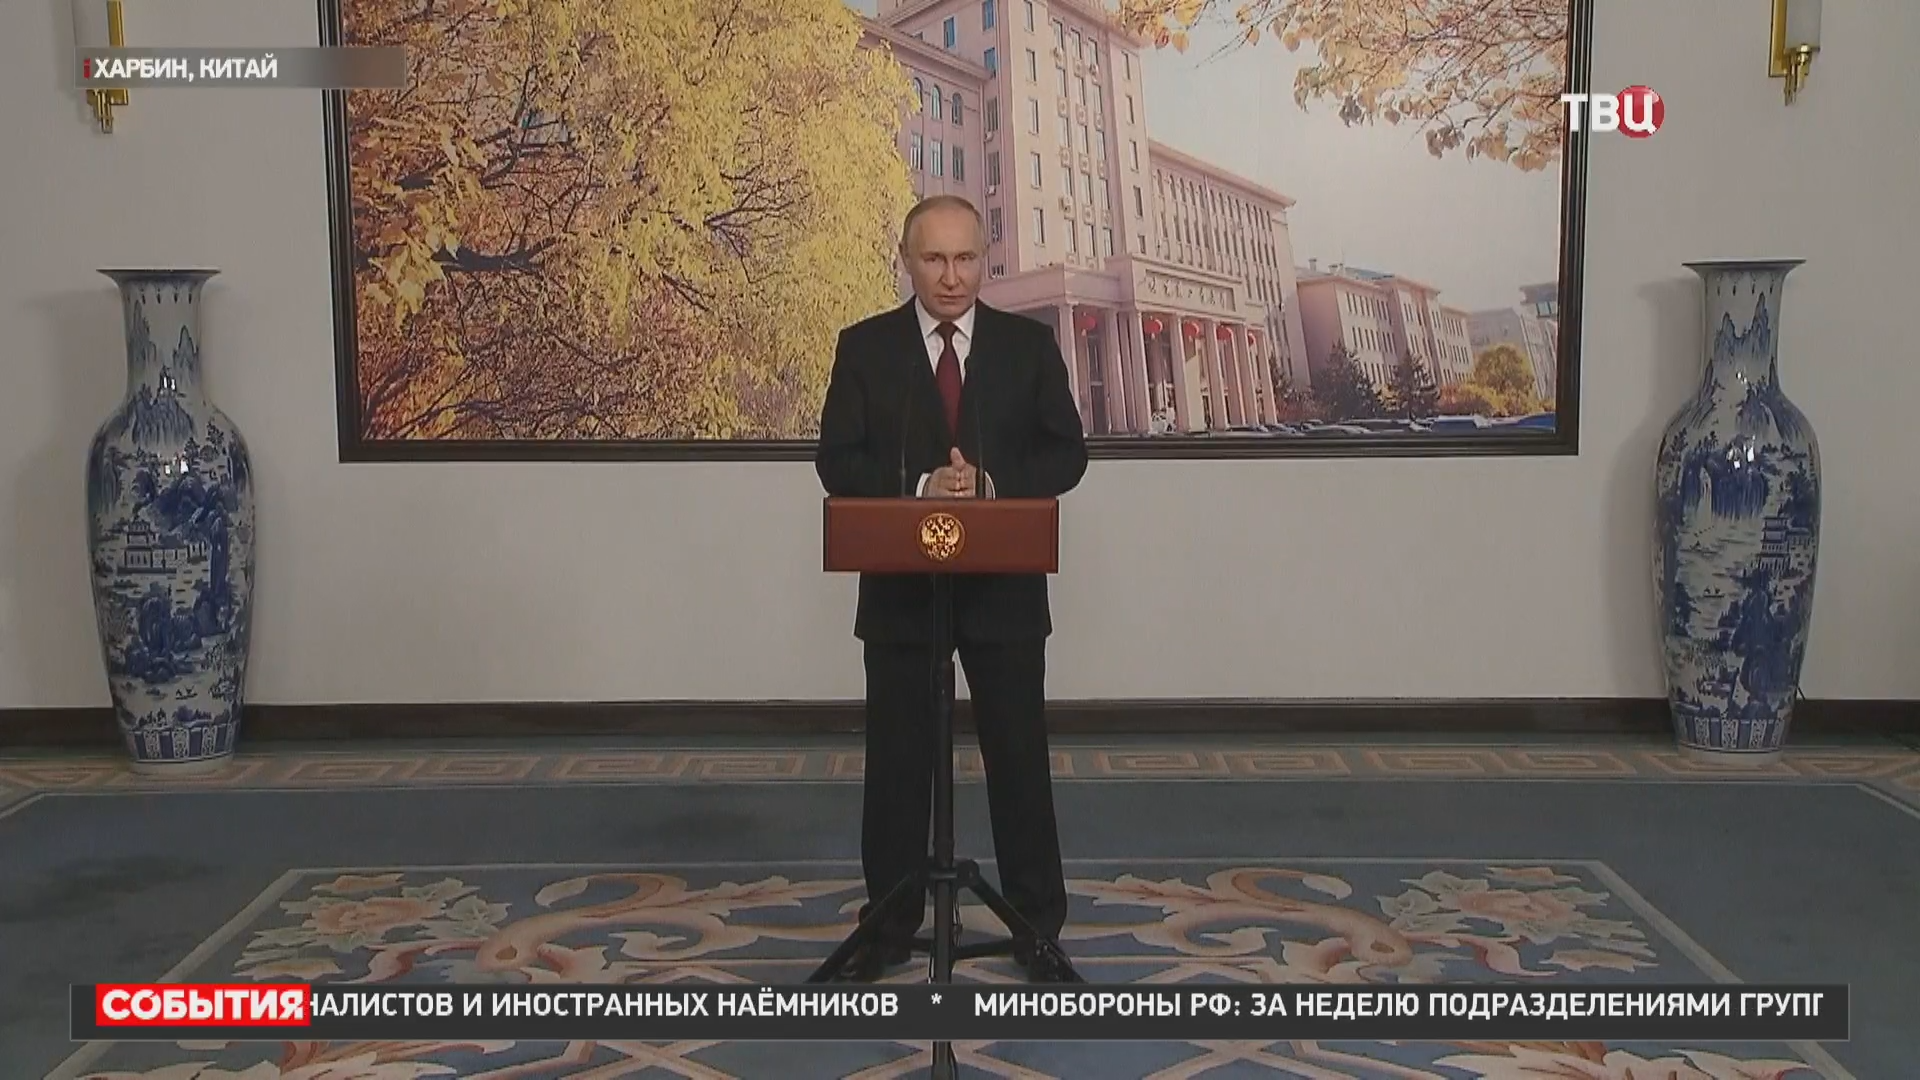 Путин дал пресс-конференцию по итогам визита в Китай. Главные заявления / События на ТВЦ